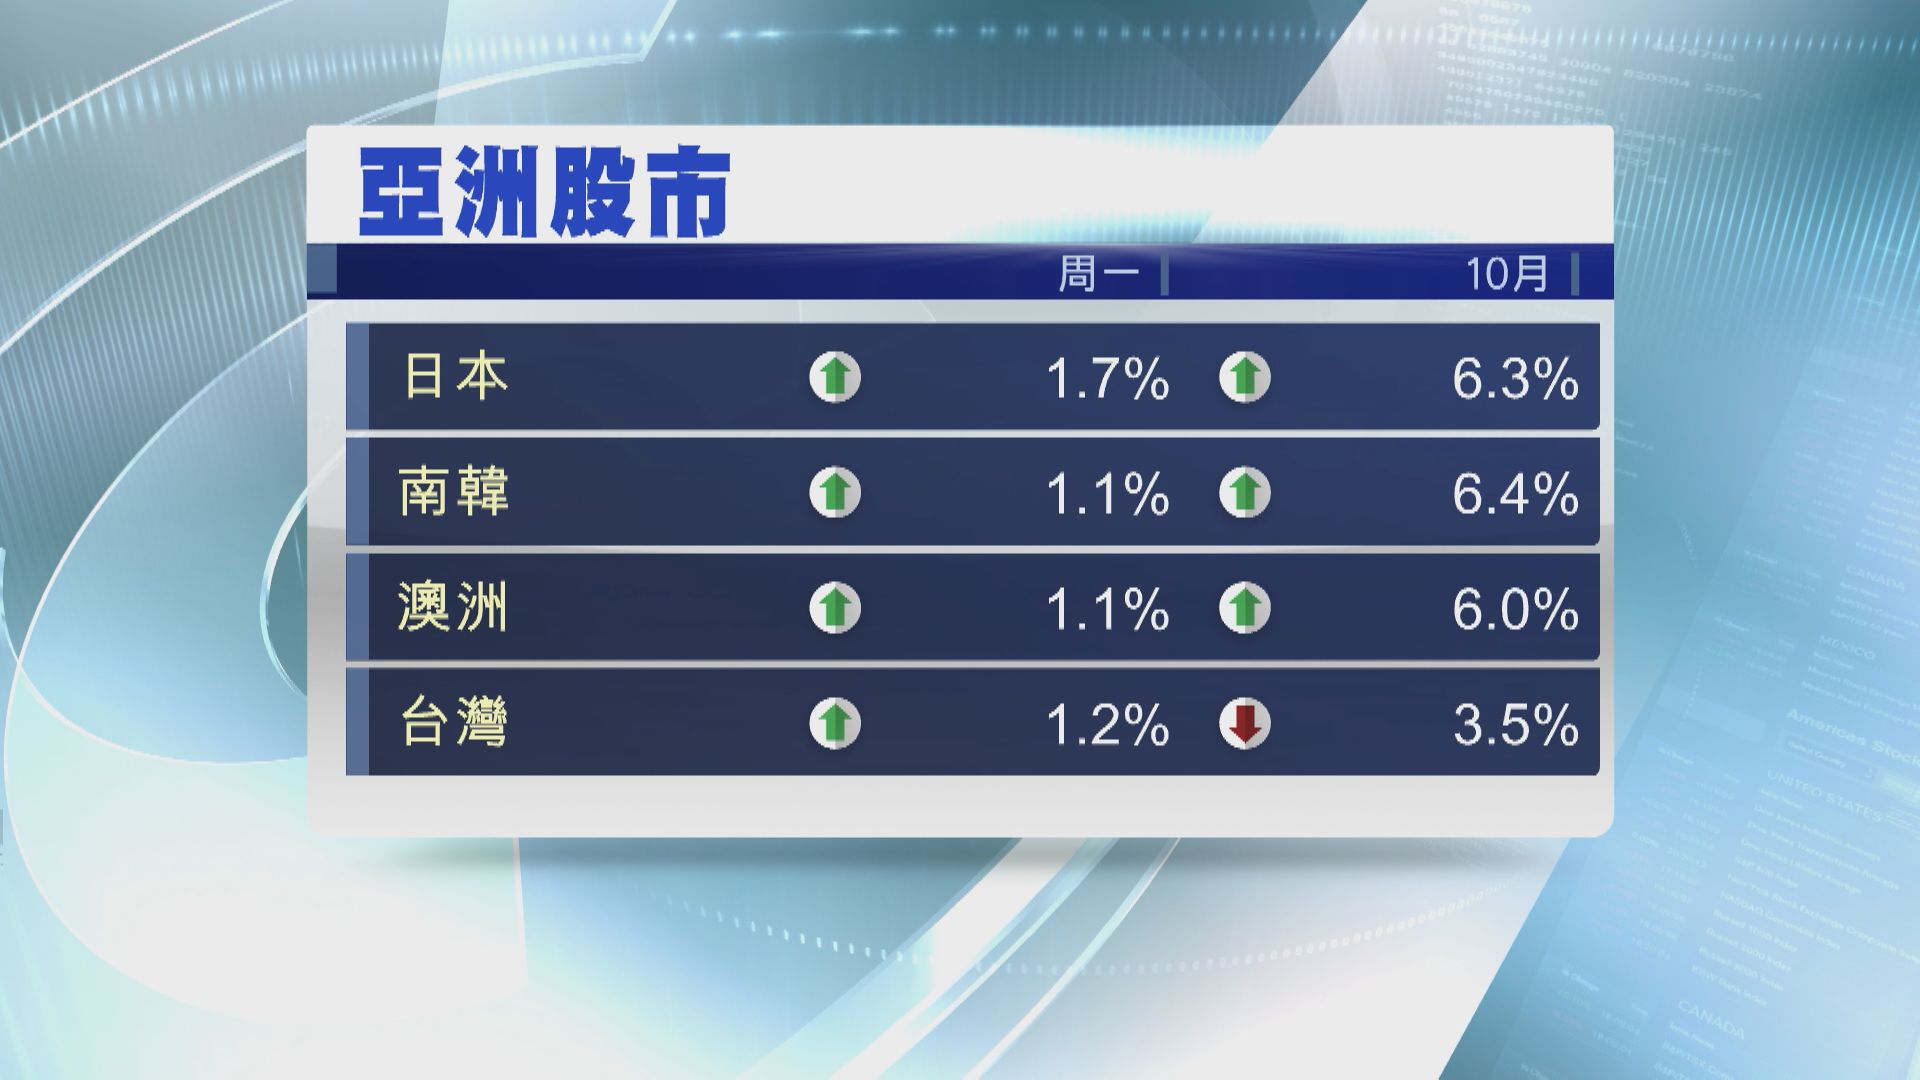 【破「股災月」魔咒】日、韓及澳洲股市10月齊升6%